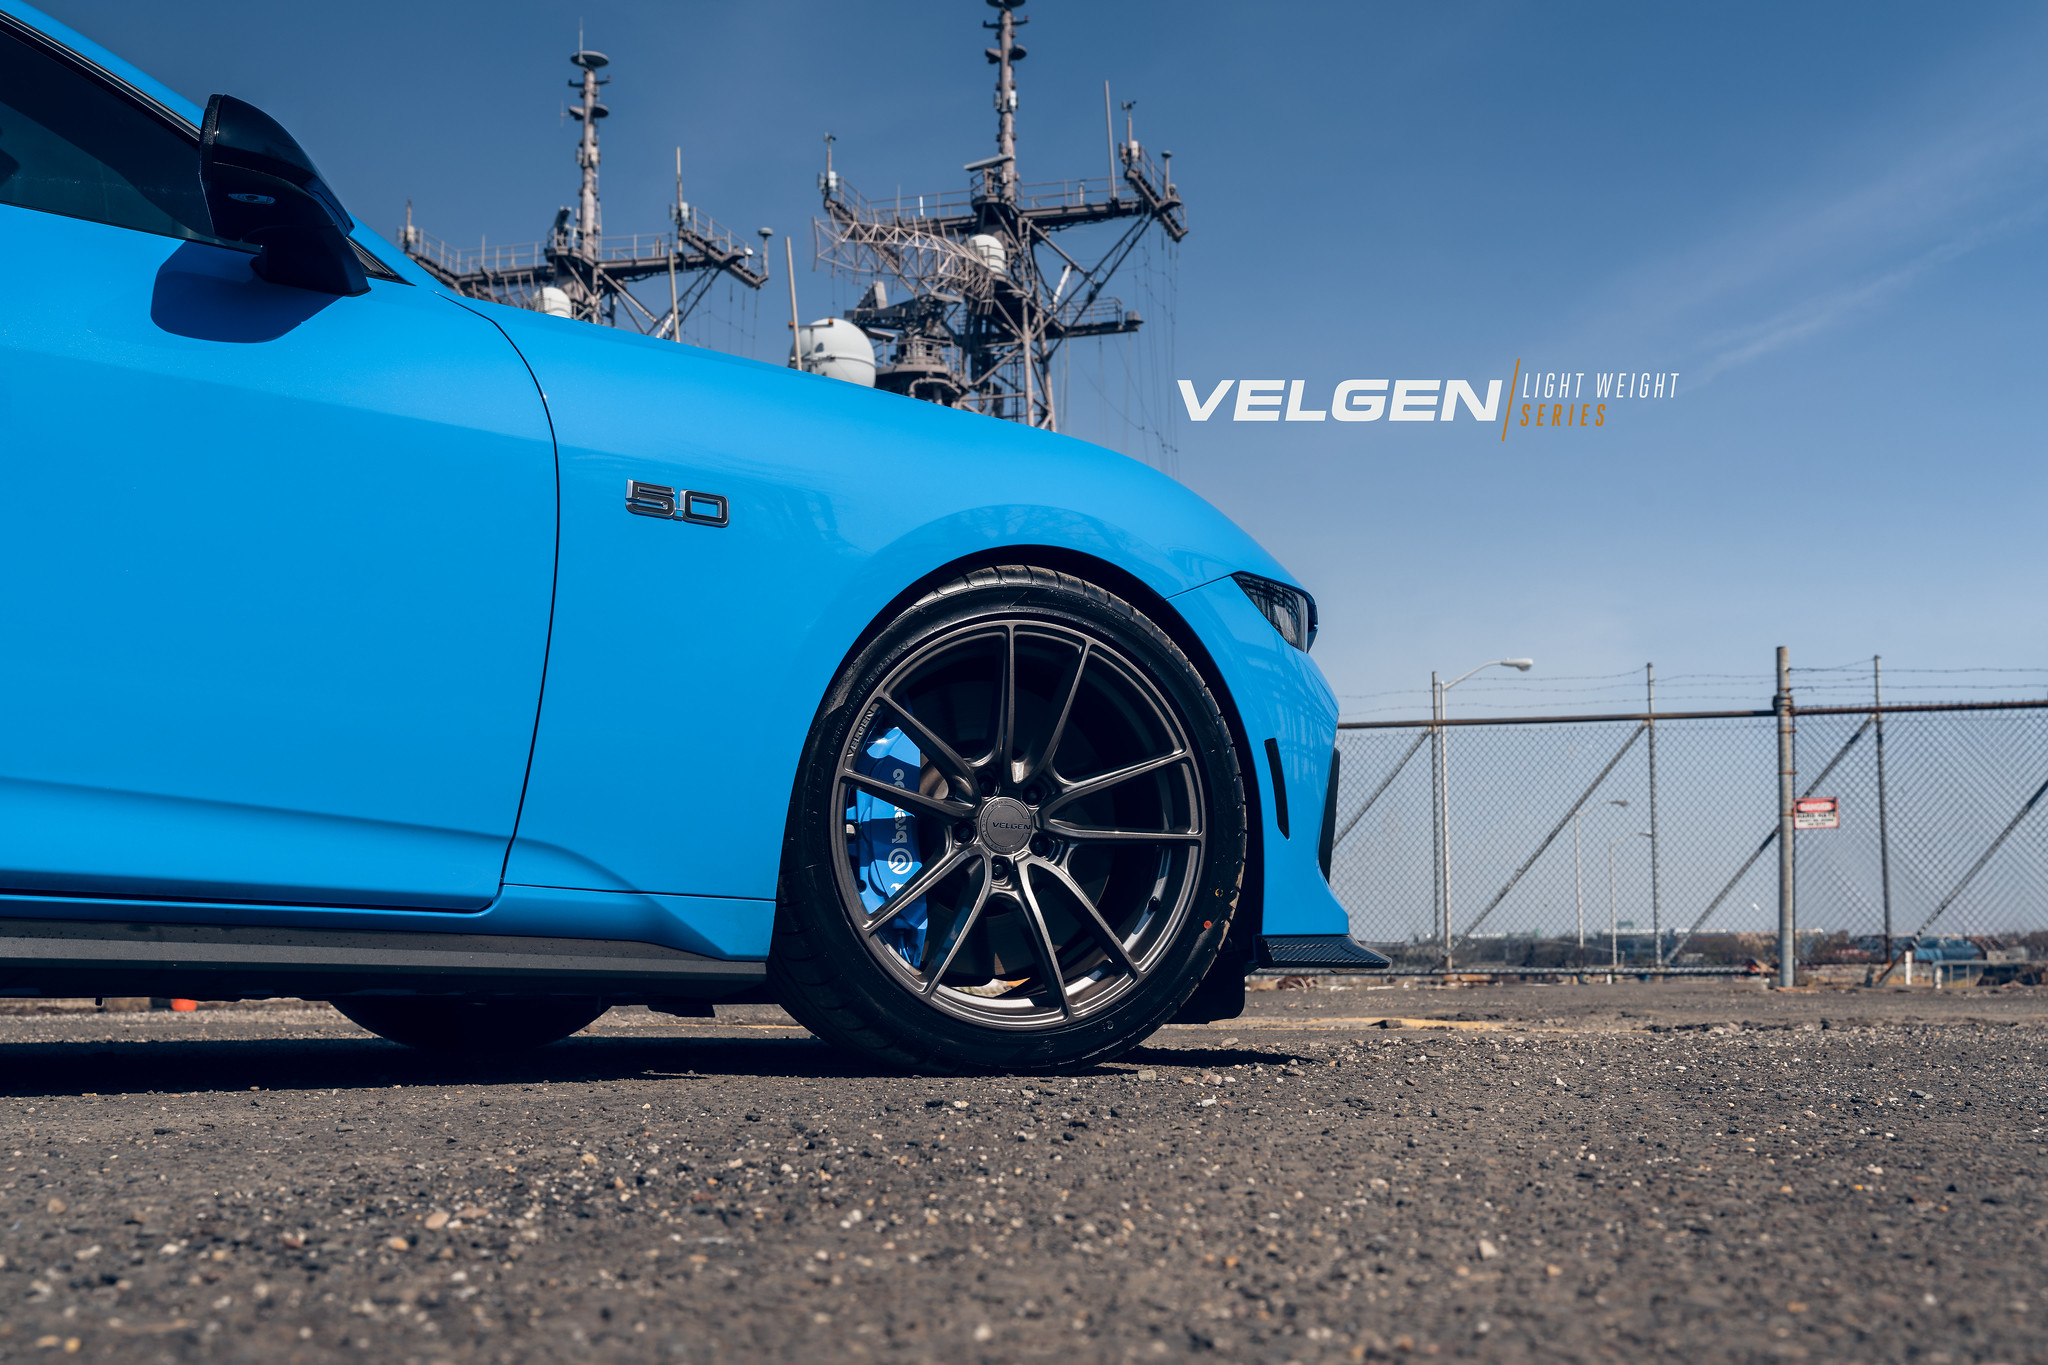 S650 Mustang Velgen wheels for your S650 Mustang | Vibe Motorsports 53601943551_fbe2ed7b54_k